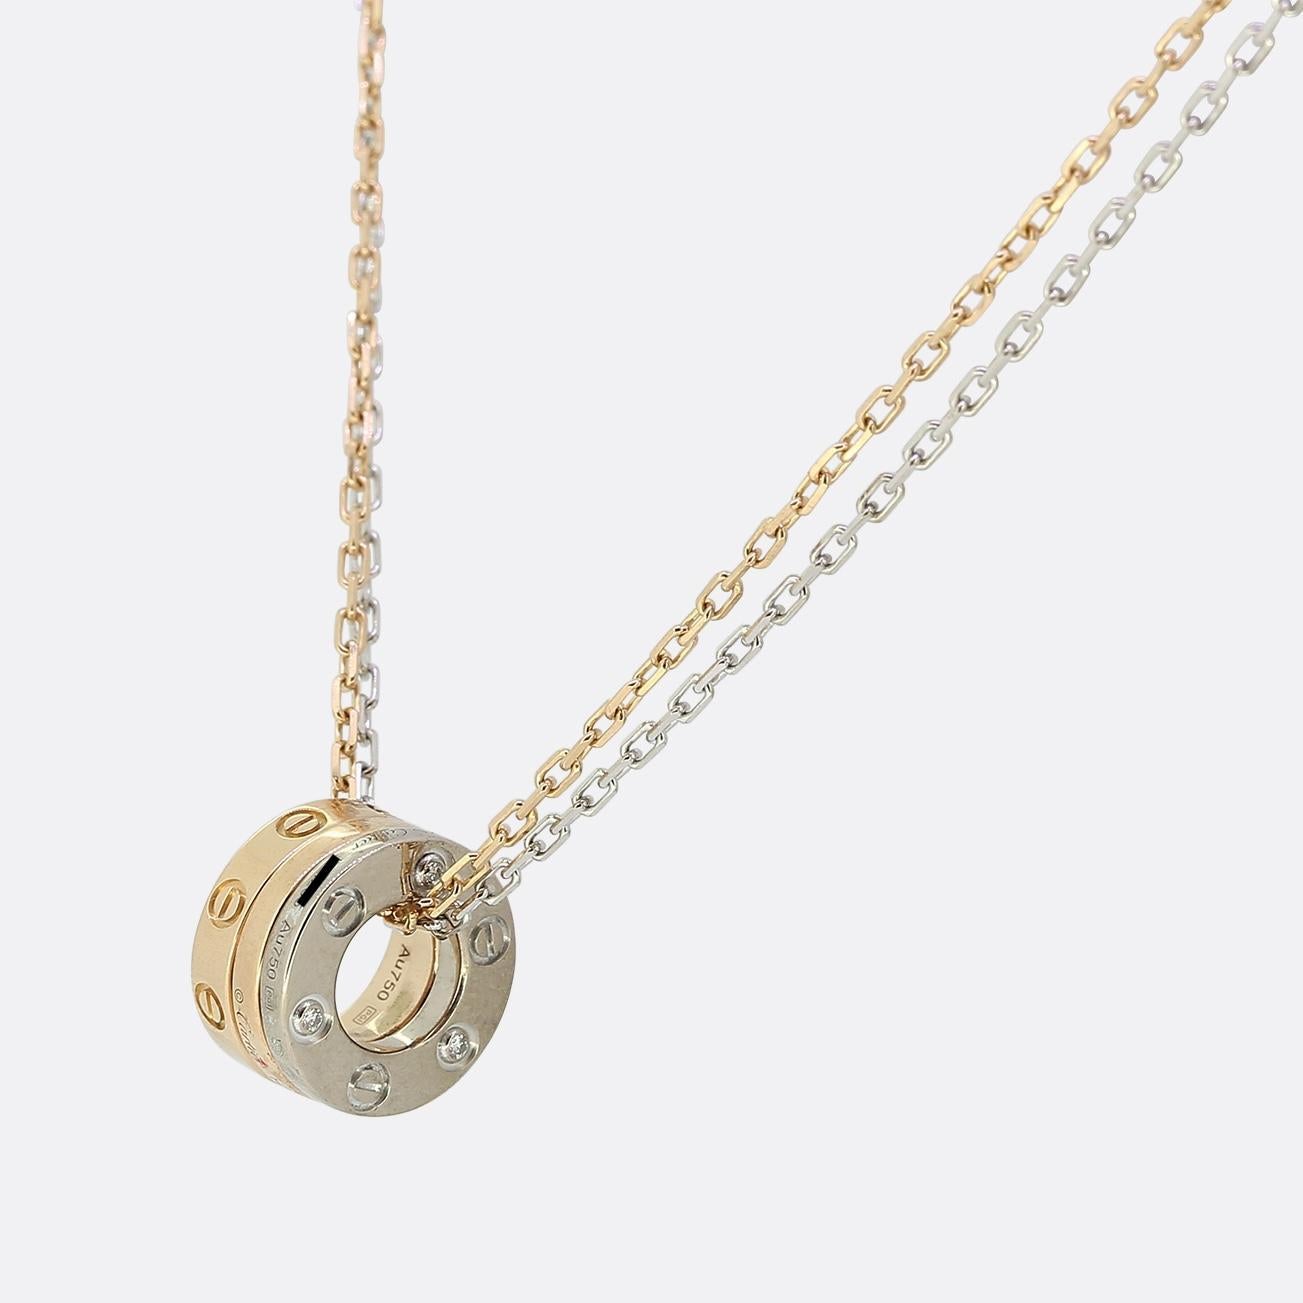 Voici un collier chic et élégant de la maison de joaillerie de renommée mondiale Cartier. Un trio de pendentifs exposés reprend le design le plus célèbre de Cartier, issu de la collection LOVE. Une mini-bague et deux mini-cercles arborent le motif